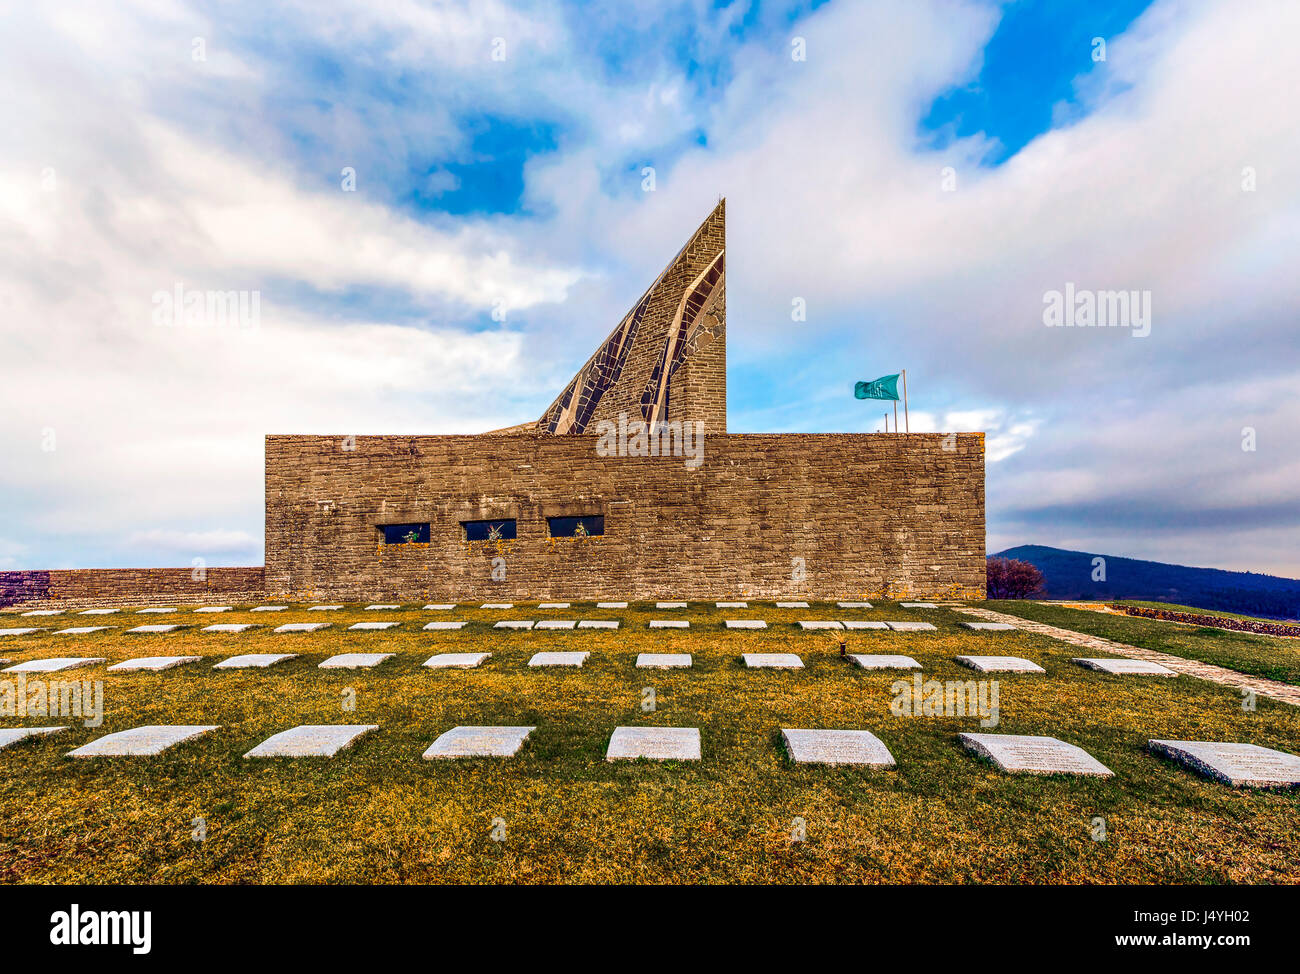 Le cimetière militaire de Futa germaniques, monument au sommet de la montagne. Le cimetière conserve les vestiges de 34 000 soldats allemands tombés pendant la guerre. Banque D'Images